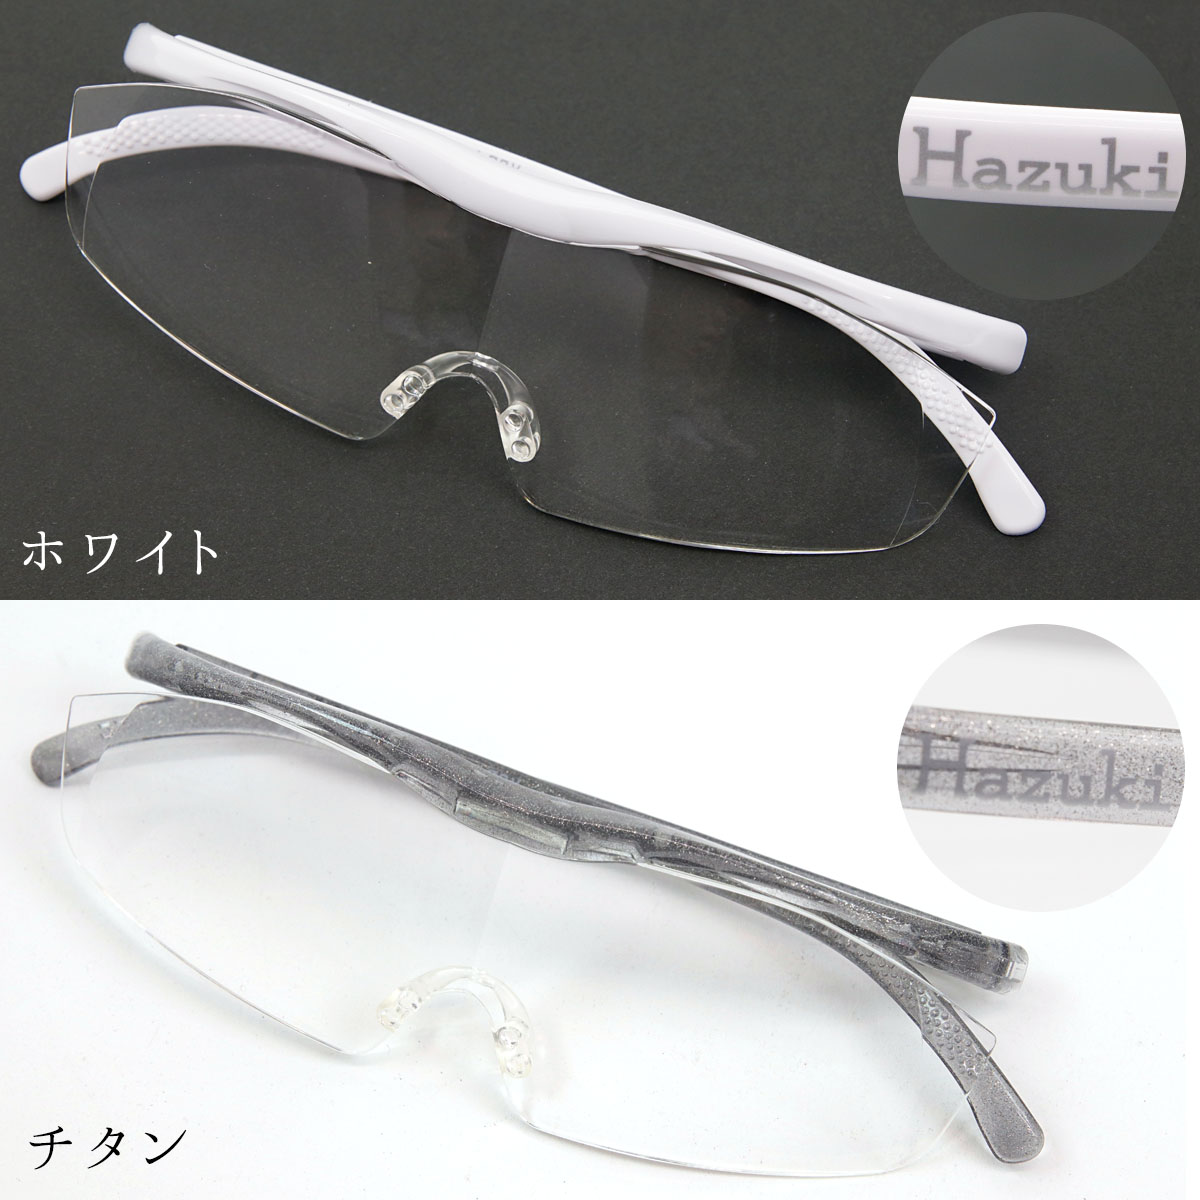 Hazuki ハズキルーペ ラージ 拡大率 1.85倍 1.6倍 1.32倍 選べる10色 長時間使用しても疲れにくい メガネ型 拡大鏡 踏んでも壊れない 様々なシーンで使える